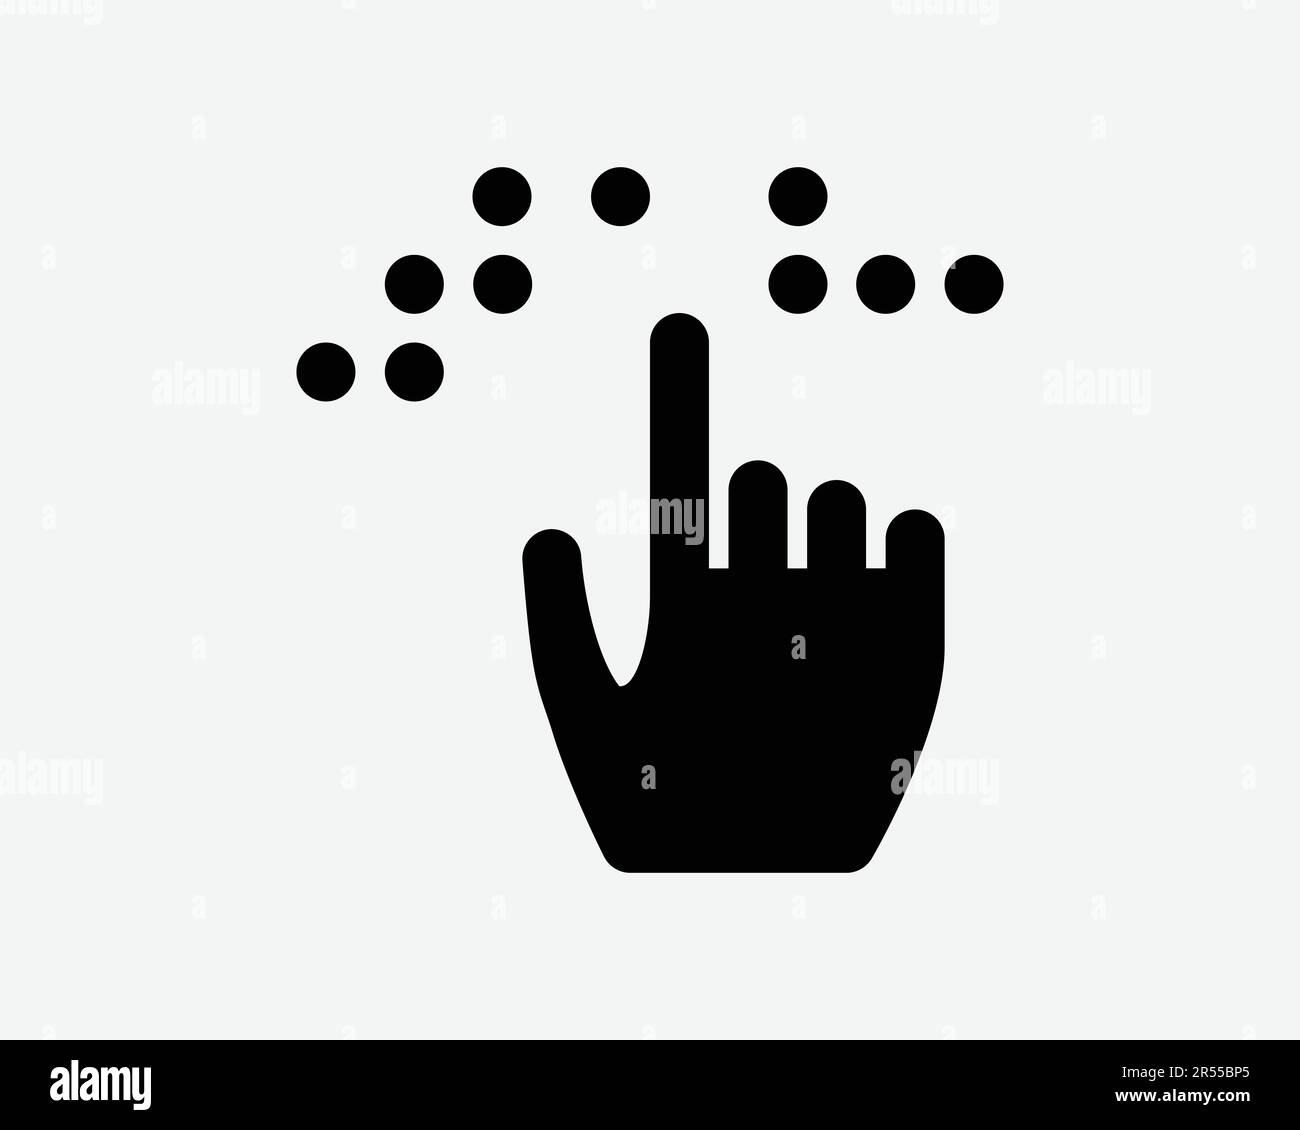 Icône Braille. Personne aveugle main doigt Touch Lire la communication langue Alphabet symbole Noir Illustration graphique Illustration Clipart EPS Vector Illustration de Vecteur